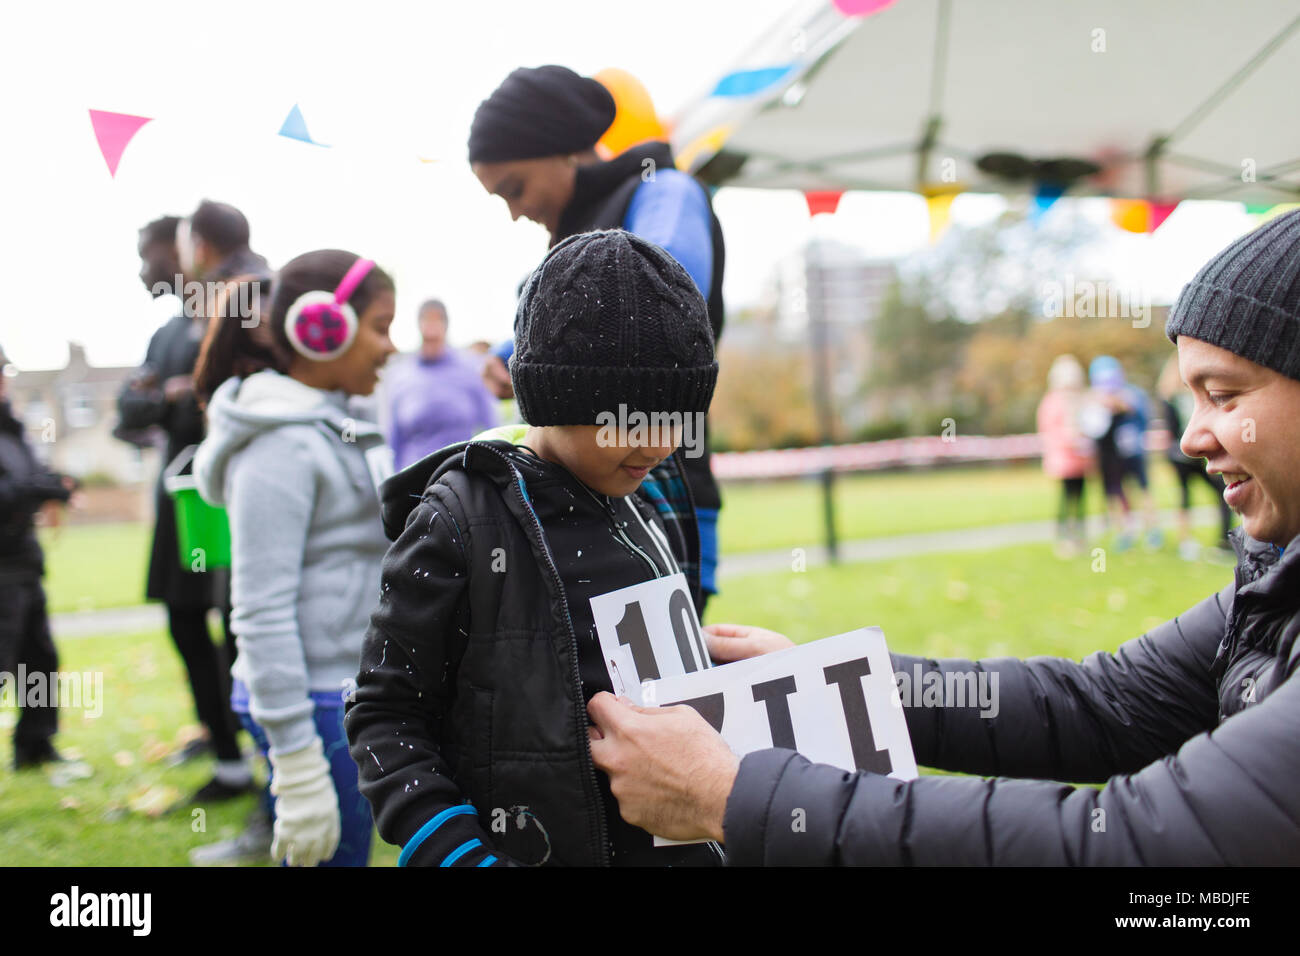 Vater pinning Marathon bib auf Sohn an der Spendenaktion in Park Stockfoto